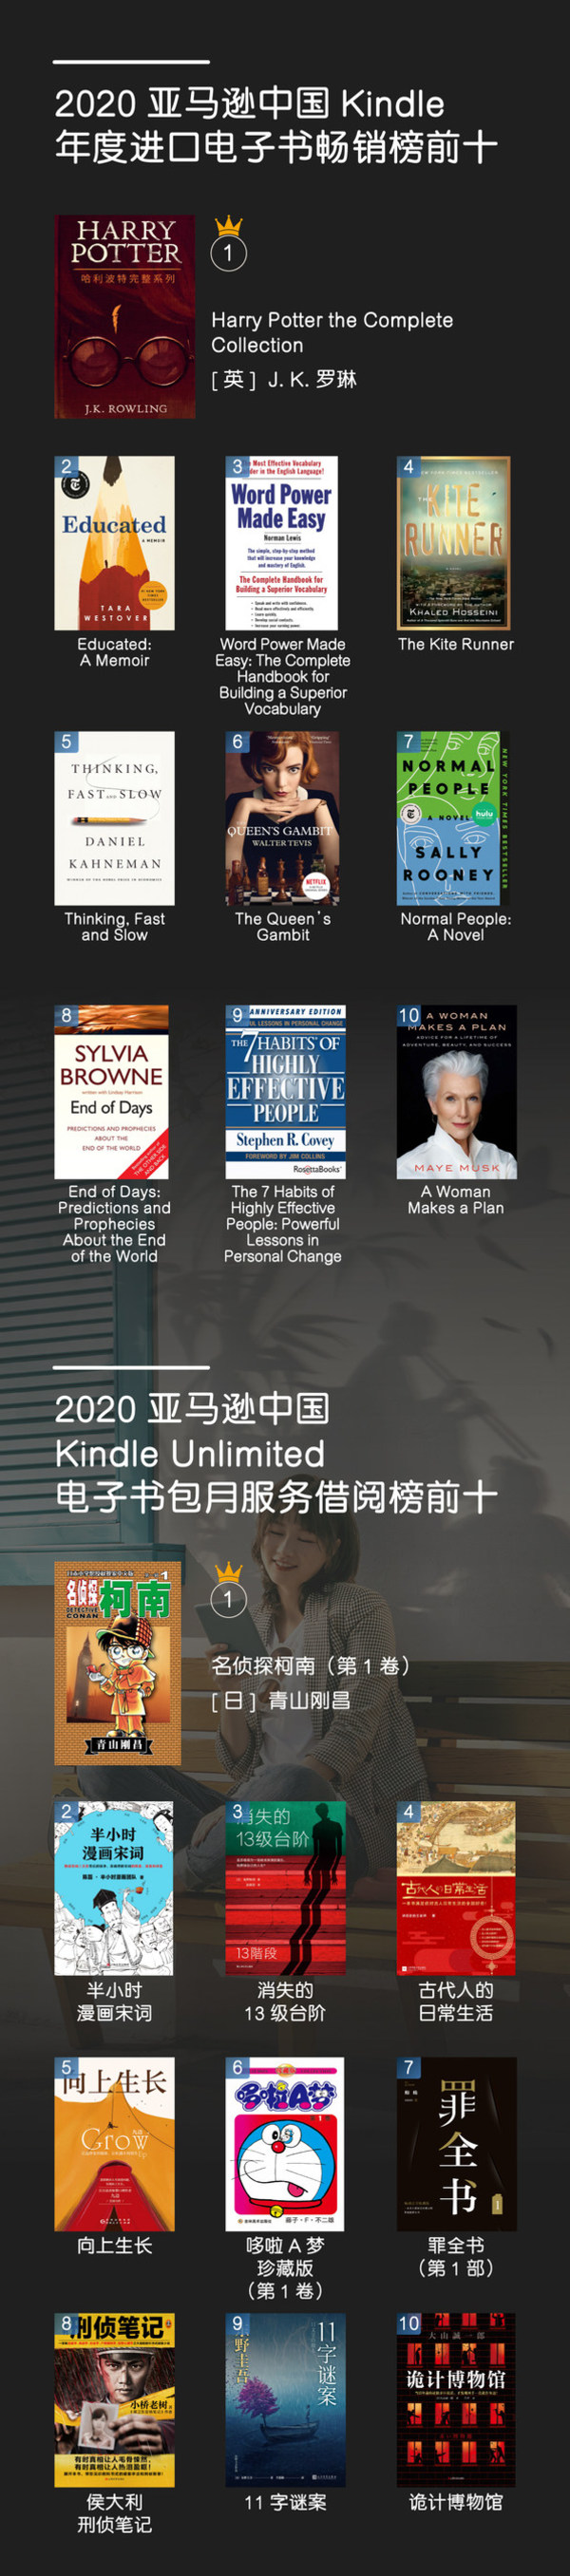 亚马逊中国发布年度kindle阅读榜单解读年数字阅读趋势 美通社pr Newswire